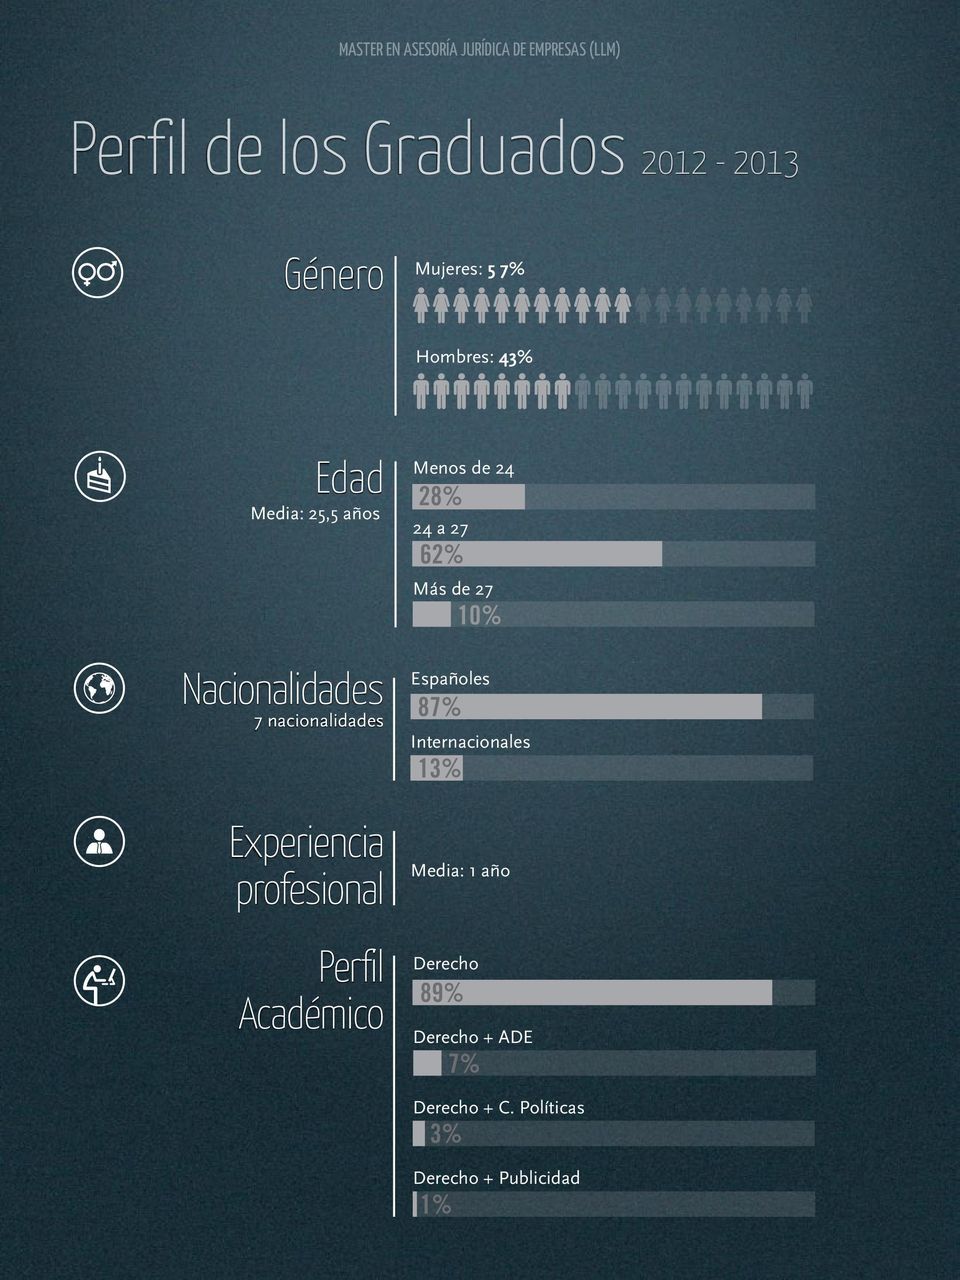 profesional Perfil Académico Menos de 24 28% 24 a 27 62% Más de 27 Españoles 87%